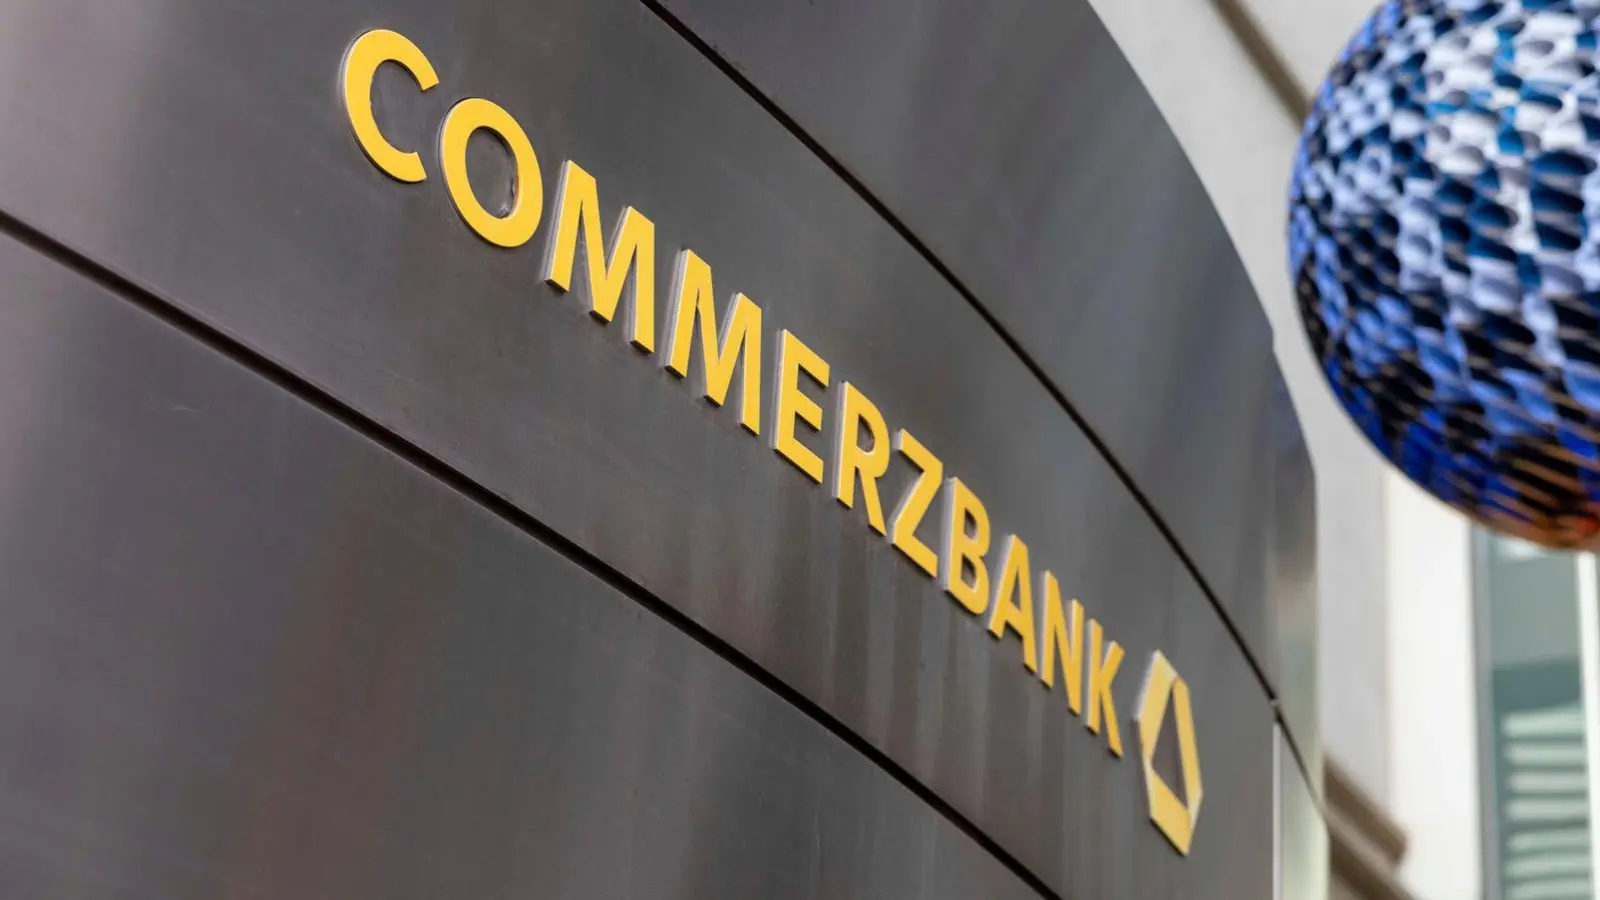 Die Commerzbank AG hat die Comdirect 2020 vollständig übernommen. (Foto: Helmut Fricke/dpa)